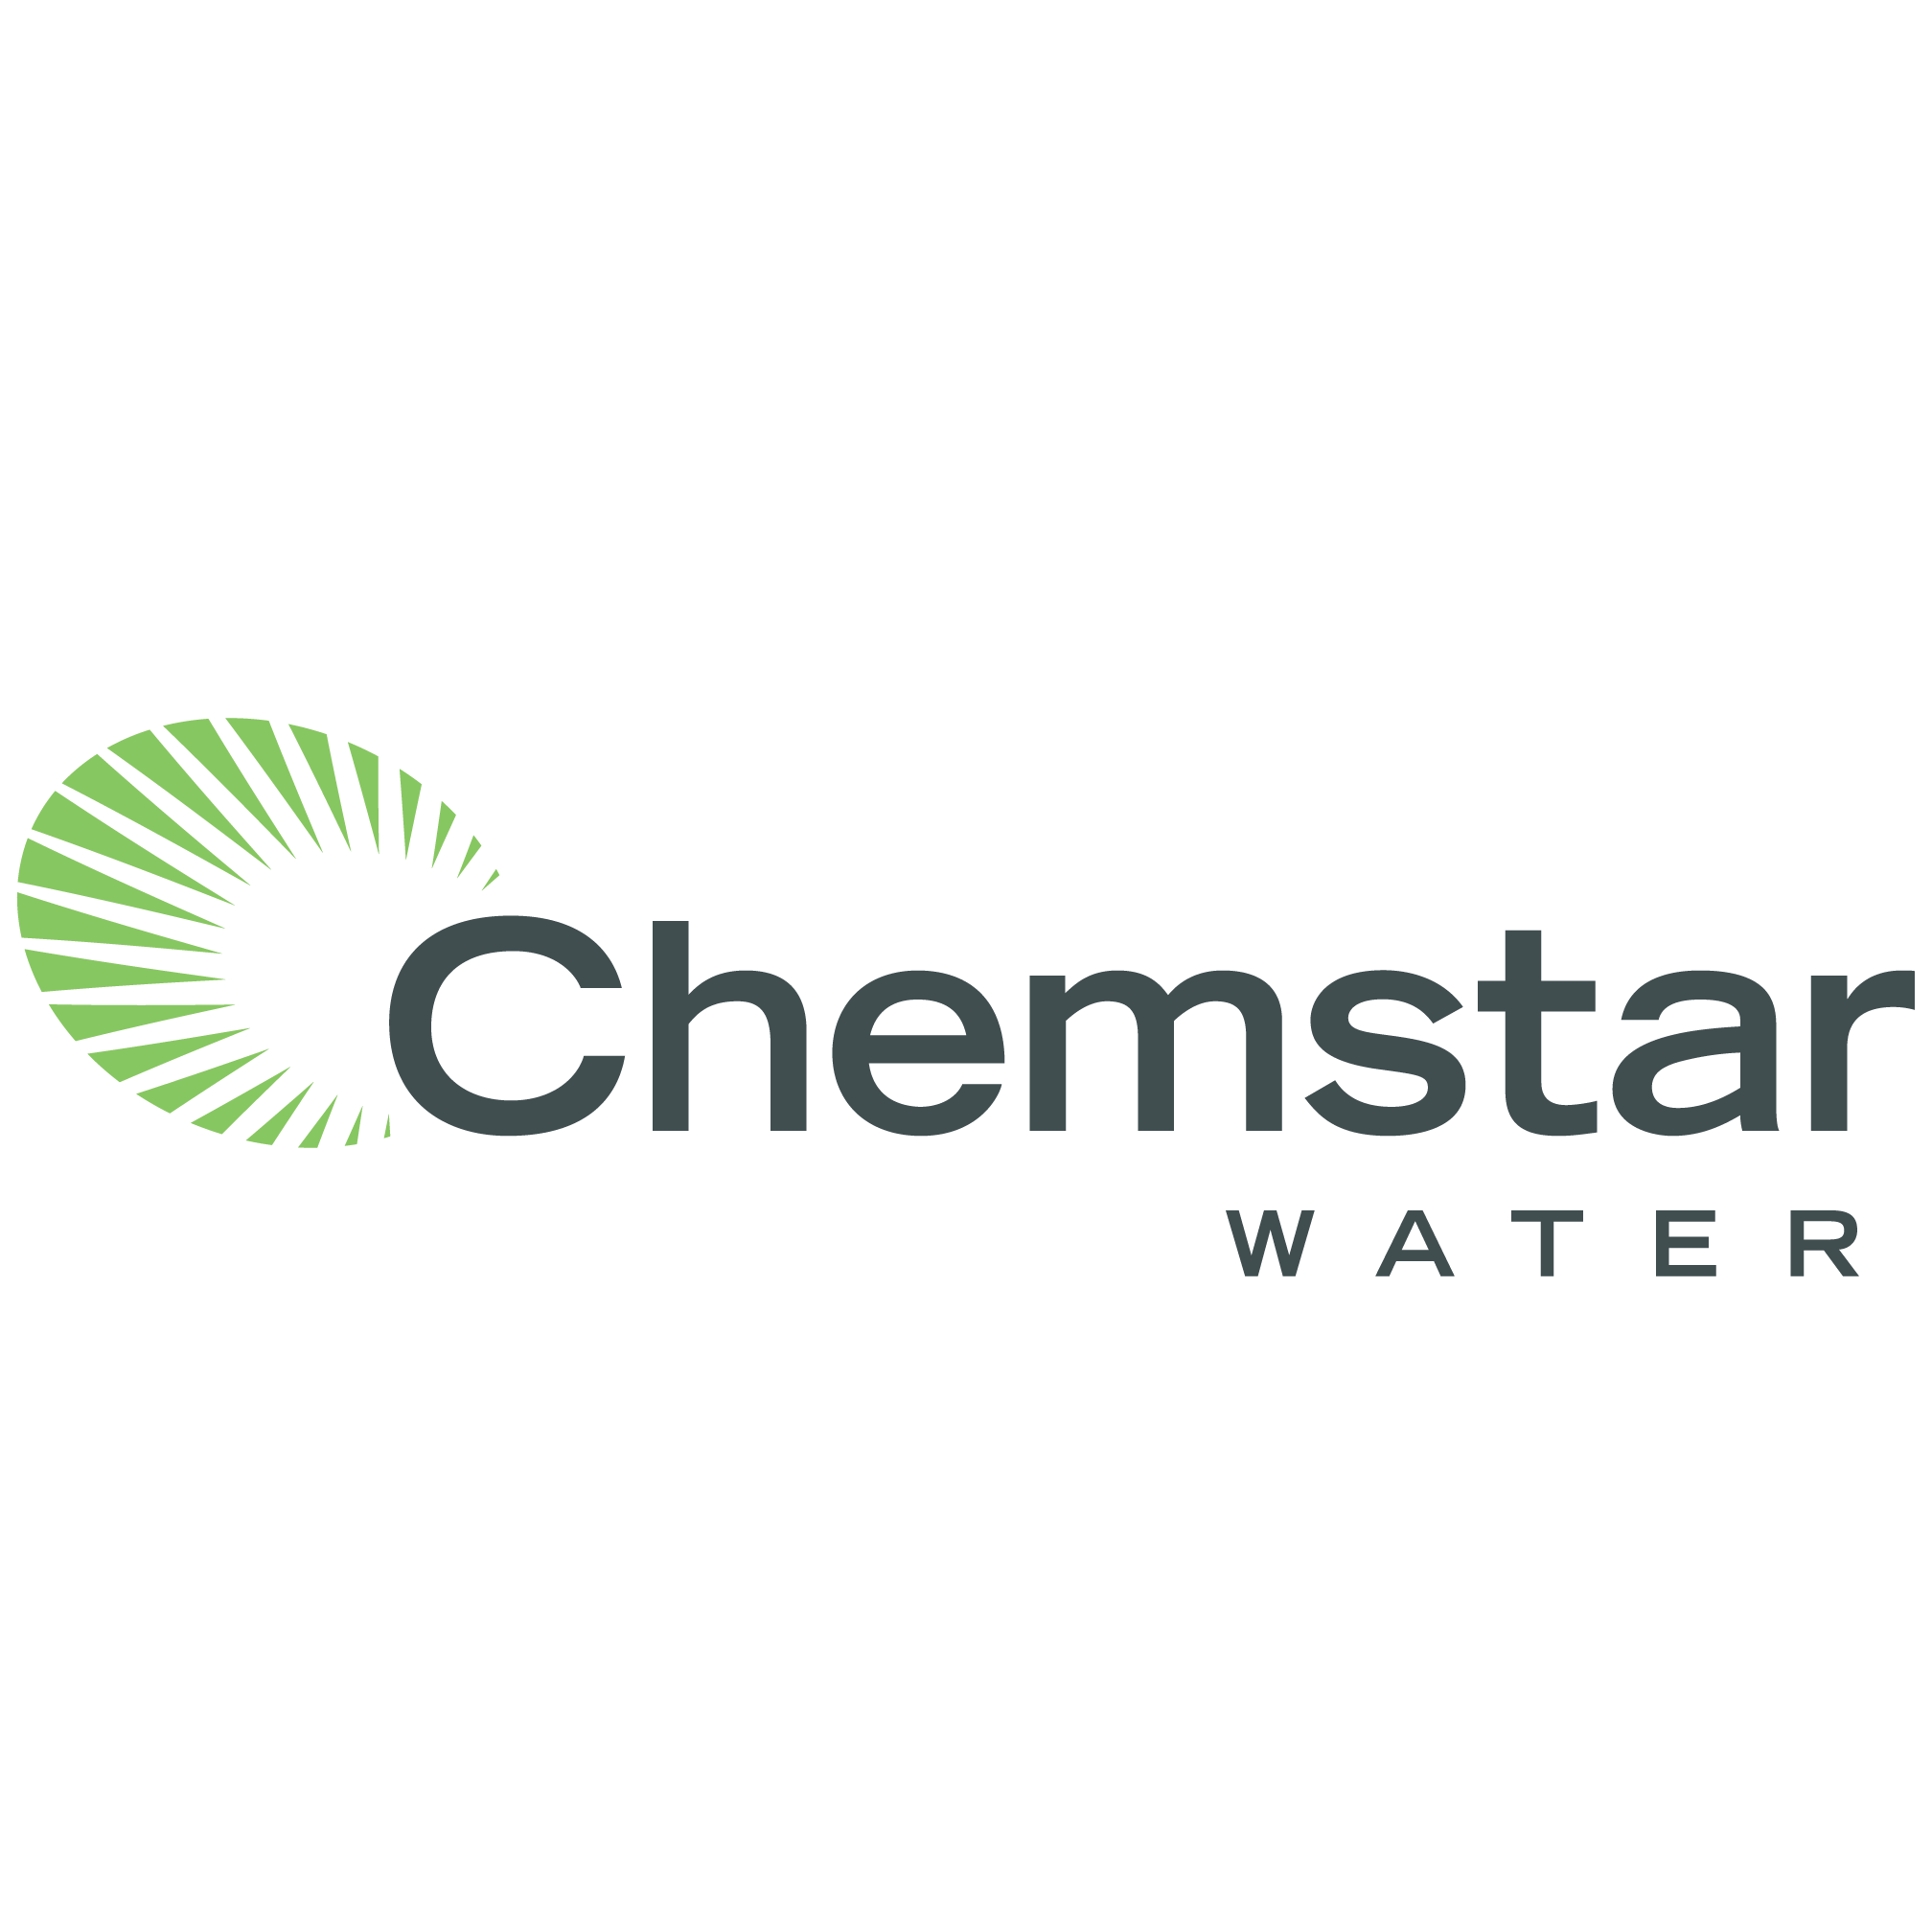 Chemstar Water